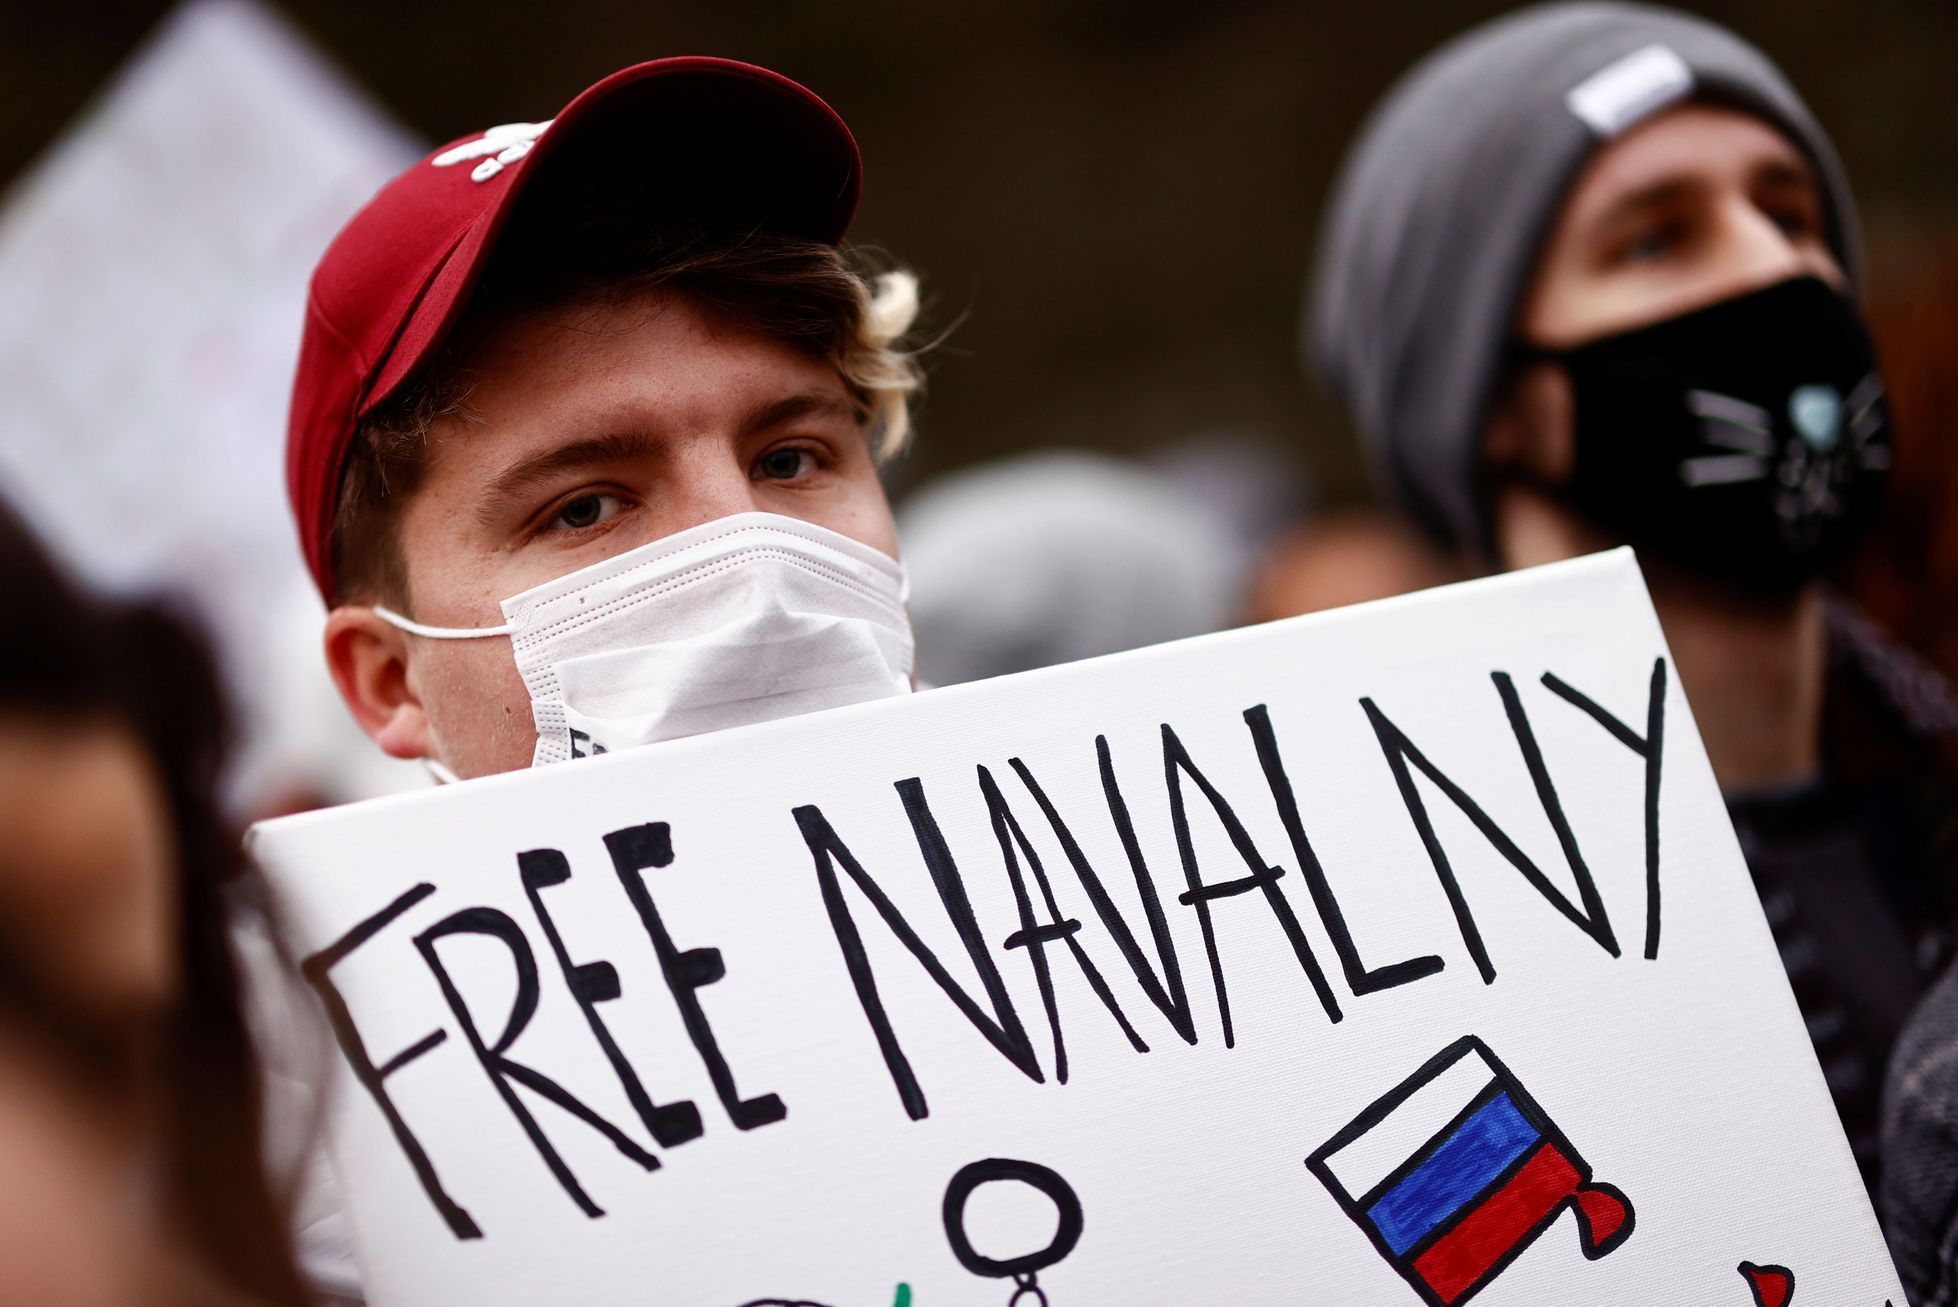 Demonstrace na podporu Alexeje Navalného, 23.01. 2021